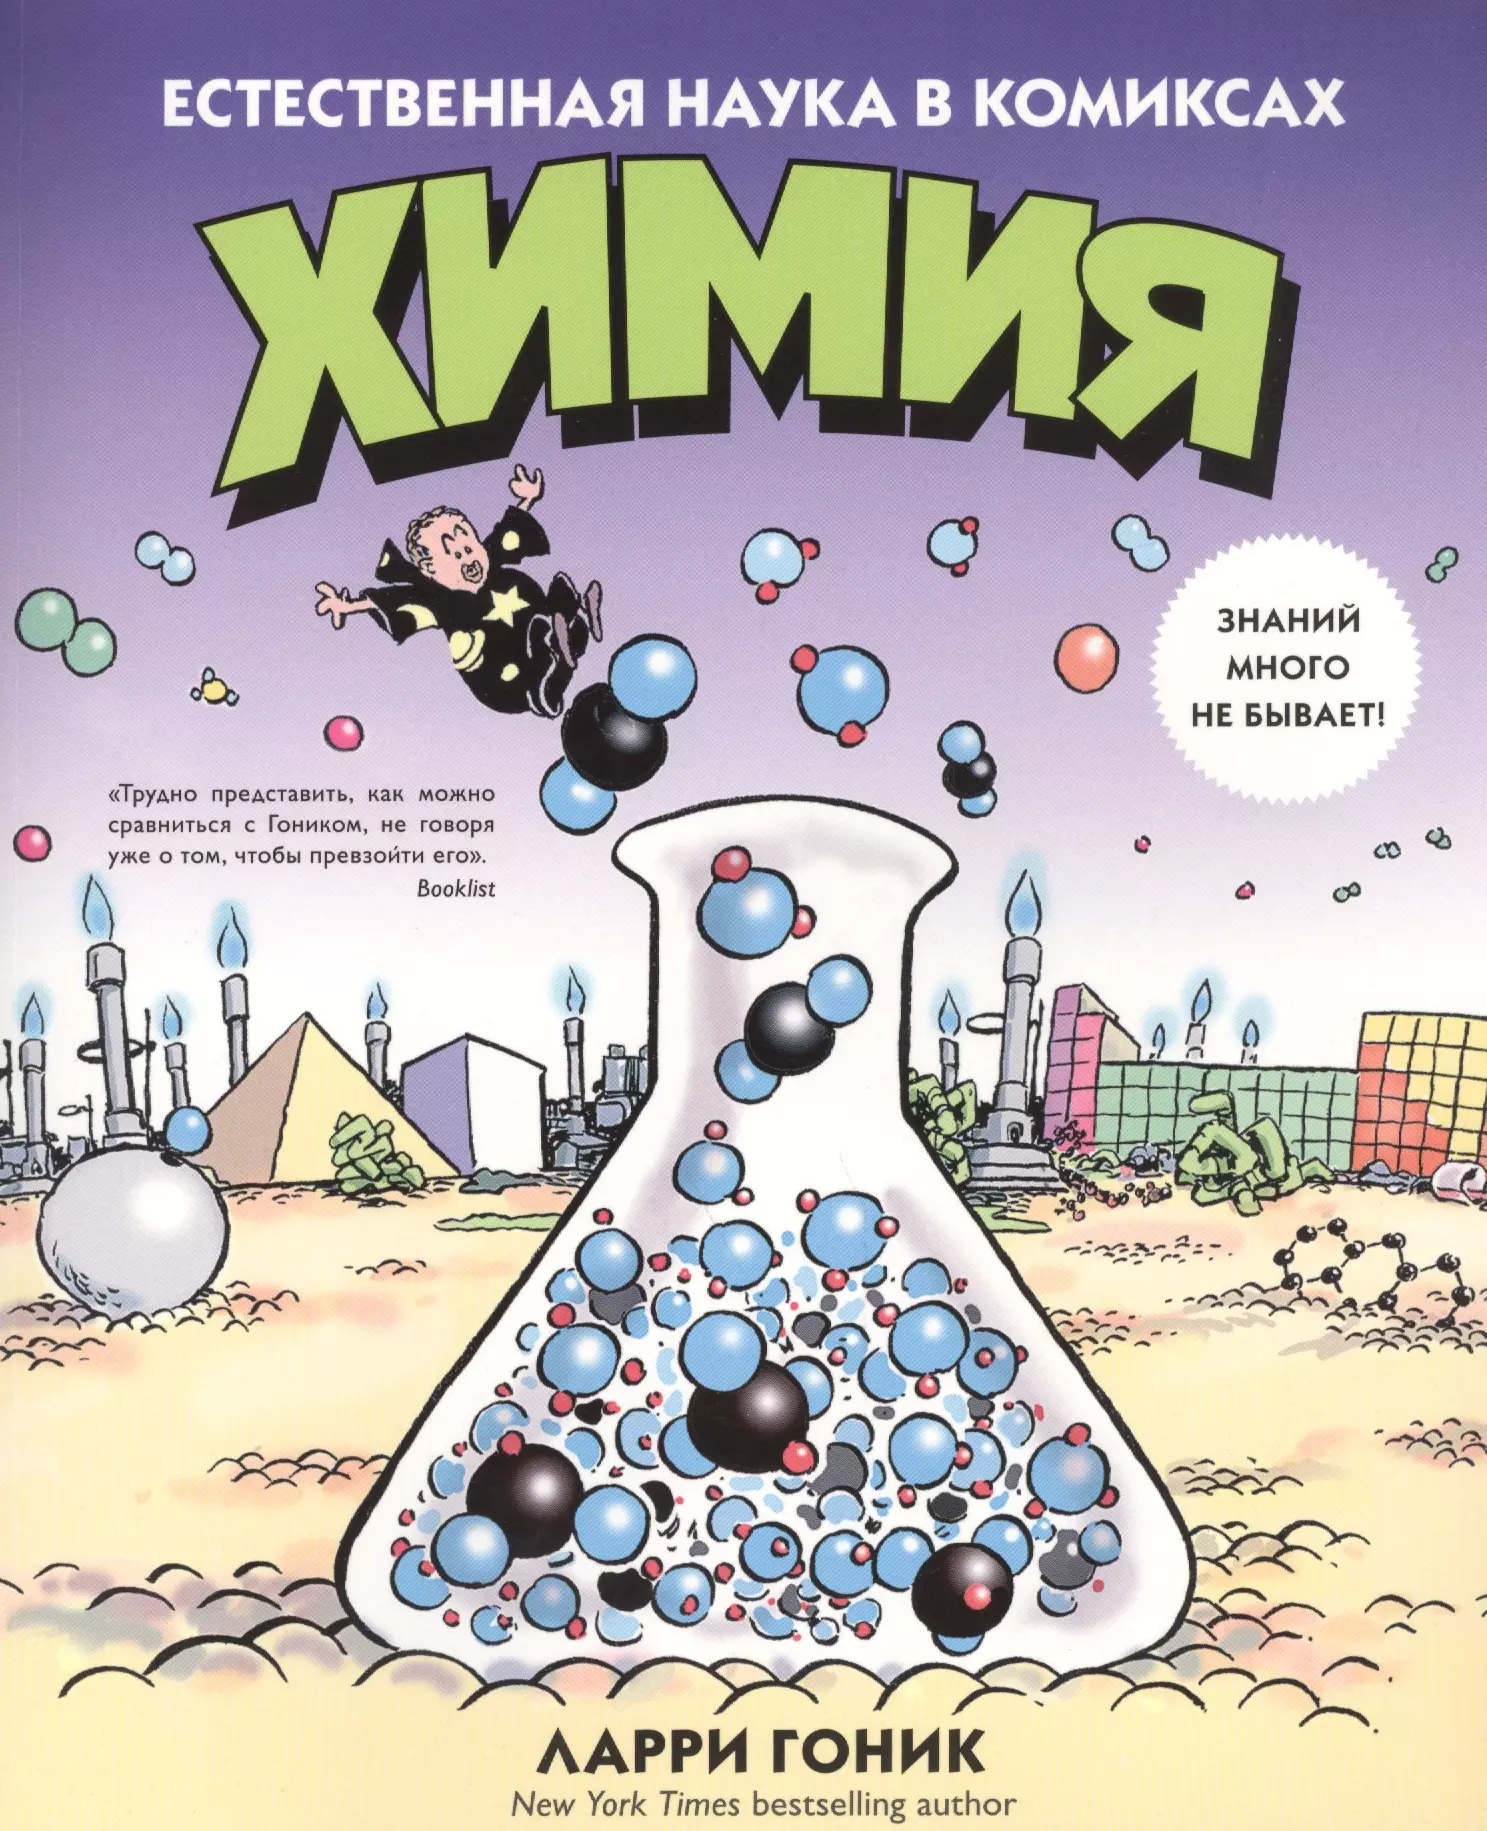 Химия. Естественная наука в комиксах гоник л криддл к химия естественная наука в комиксах